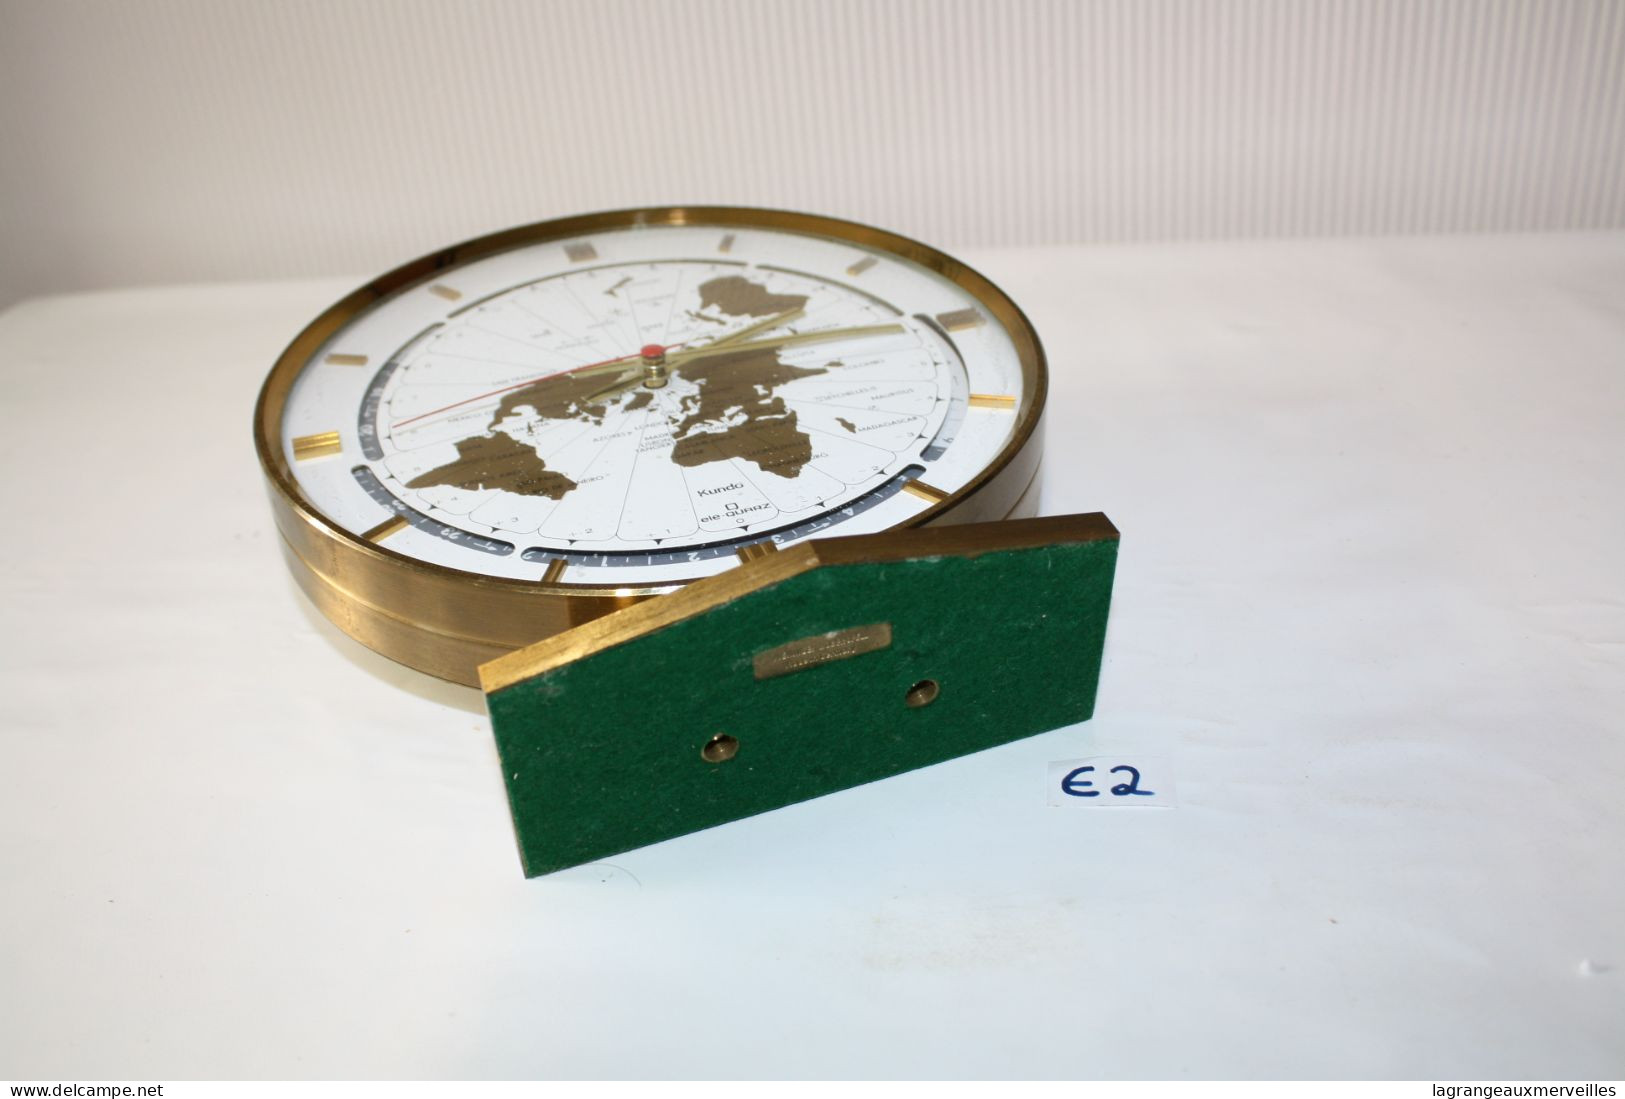 E2 Horloge de table vintage de Kundo - Allemagne 1960